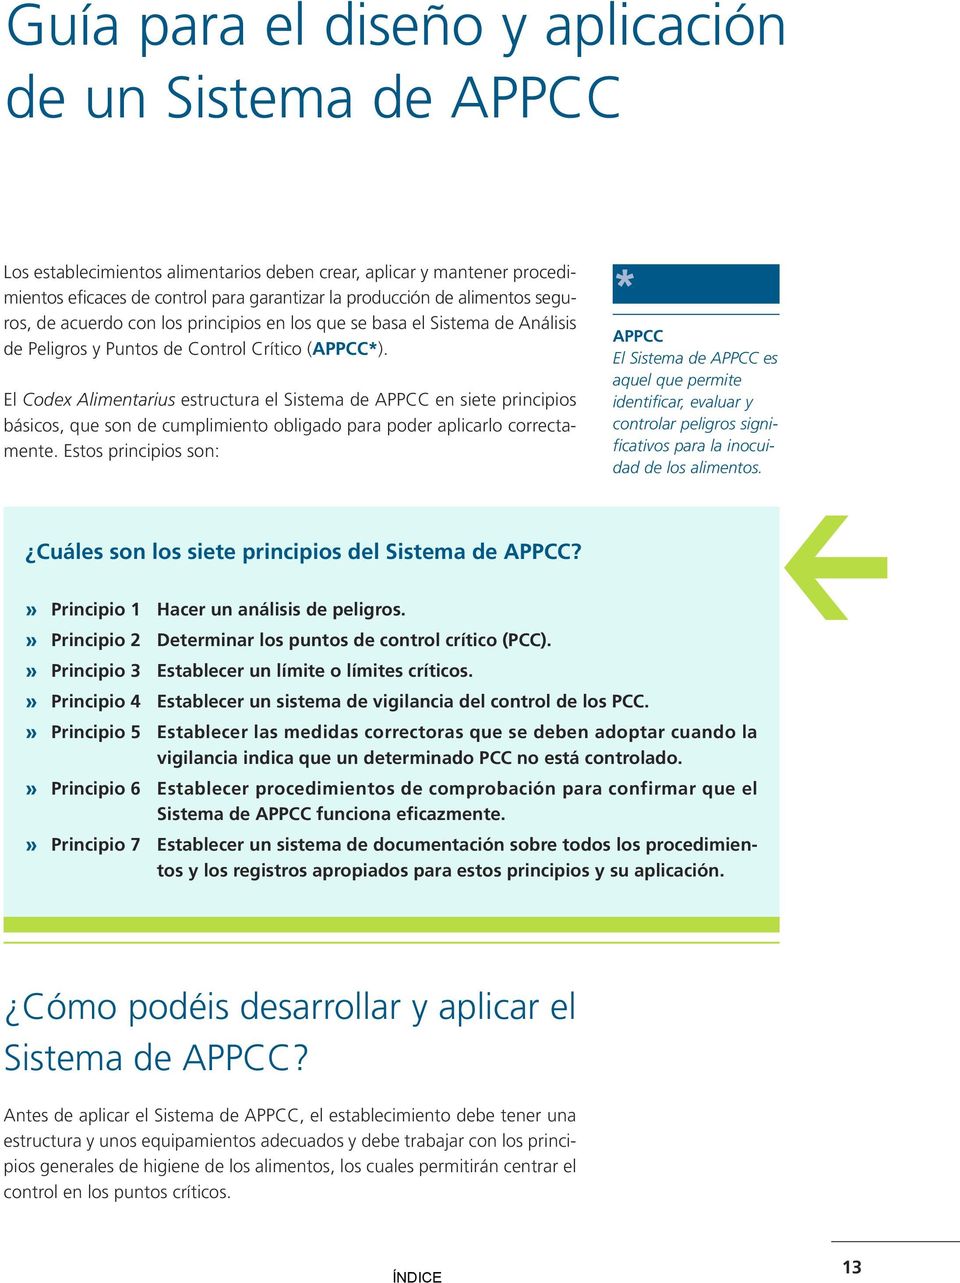 El Codex Alimentarius estructura el Sistema de APPCC en siete principios básicos, que son de cumplimiento obligado para poder aplicarlo correctamente.